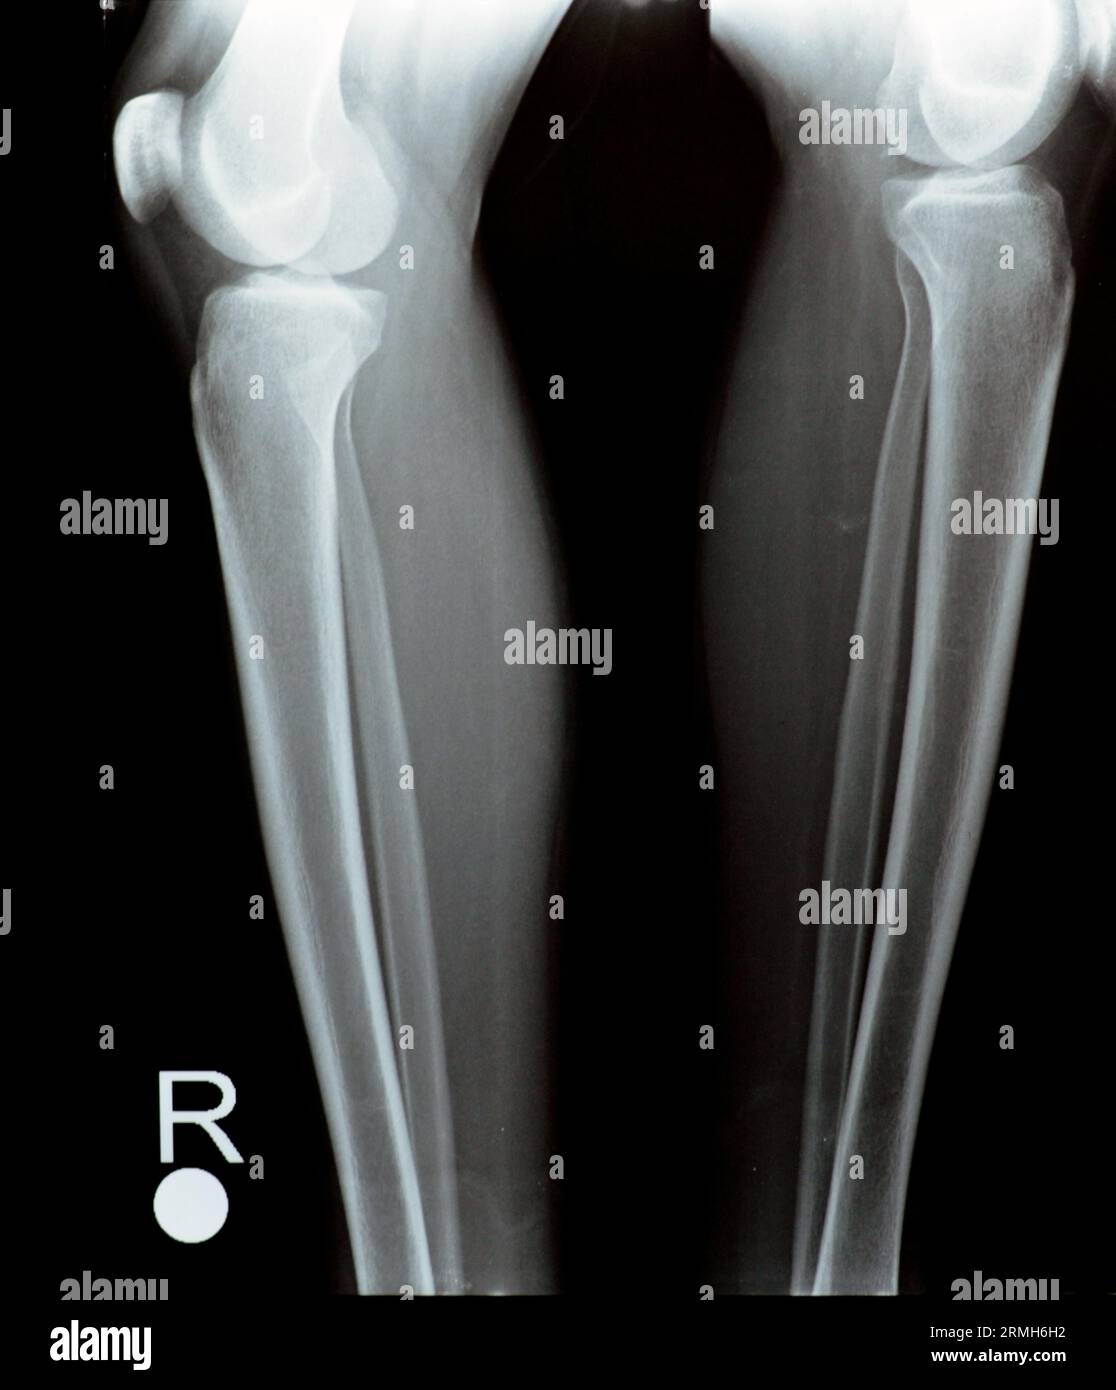 Radiografia semplice delle articolazioni del ginocchio destro e sinistro con la parte inferiore del femore e le parti superiori della tibia, della perone e della rotula che mostrano una normale Unione del ginocchio di A. Foto Stock